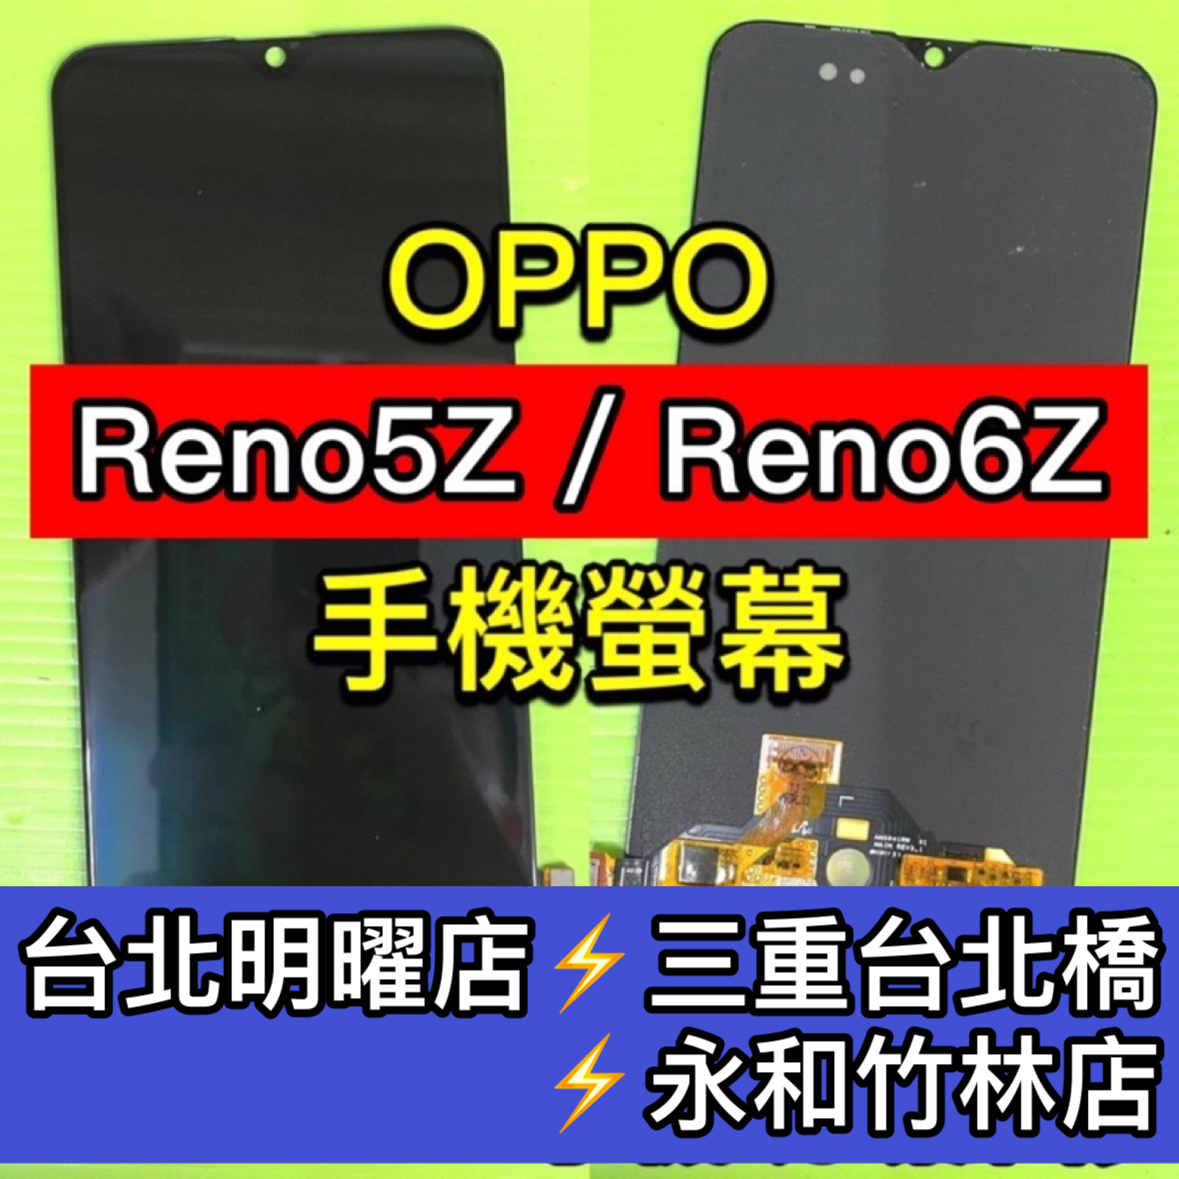 OPPO Reno5Z Reno6Z 螢幕總成 Reno5Z螢幕 Reno6Z螢幕 換螢幕 螢幕維修更換